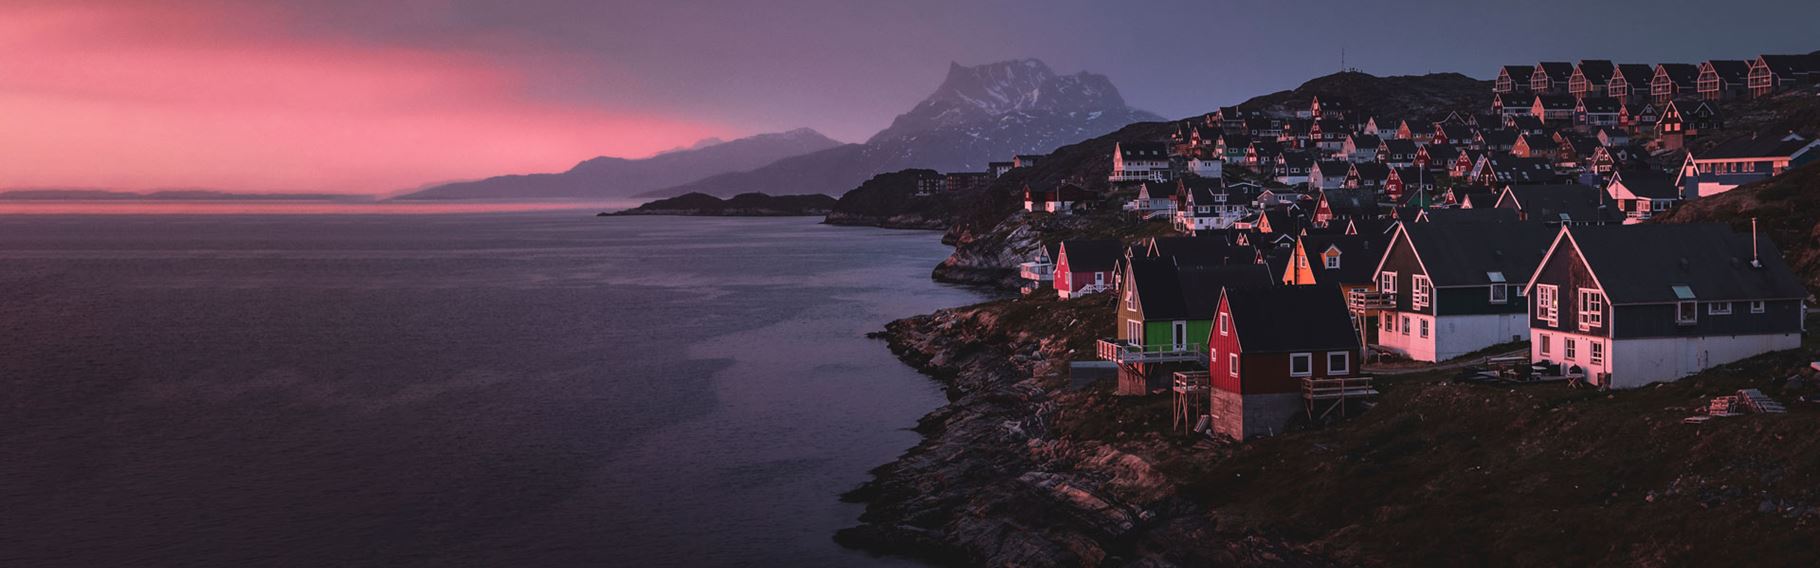 rejser til Grønland, Nuuk, solnedgang, farverige huse